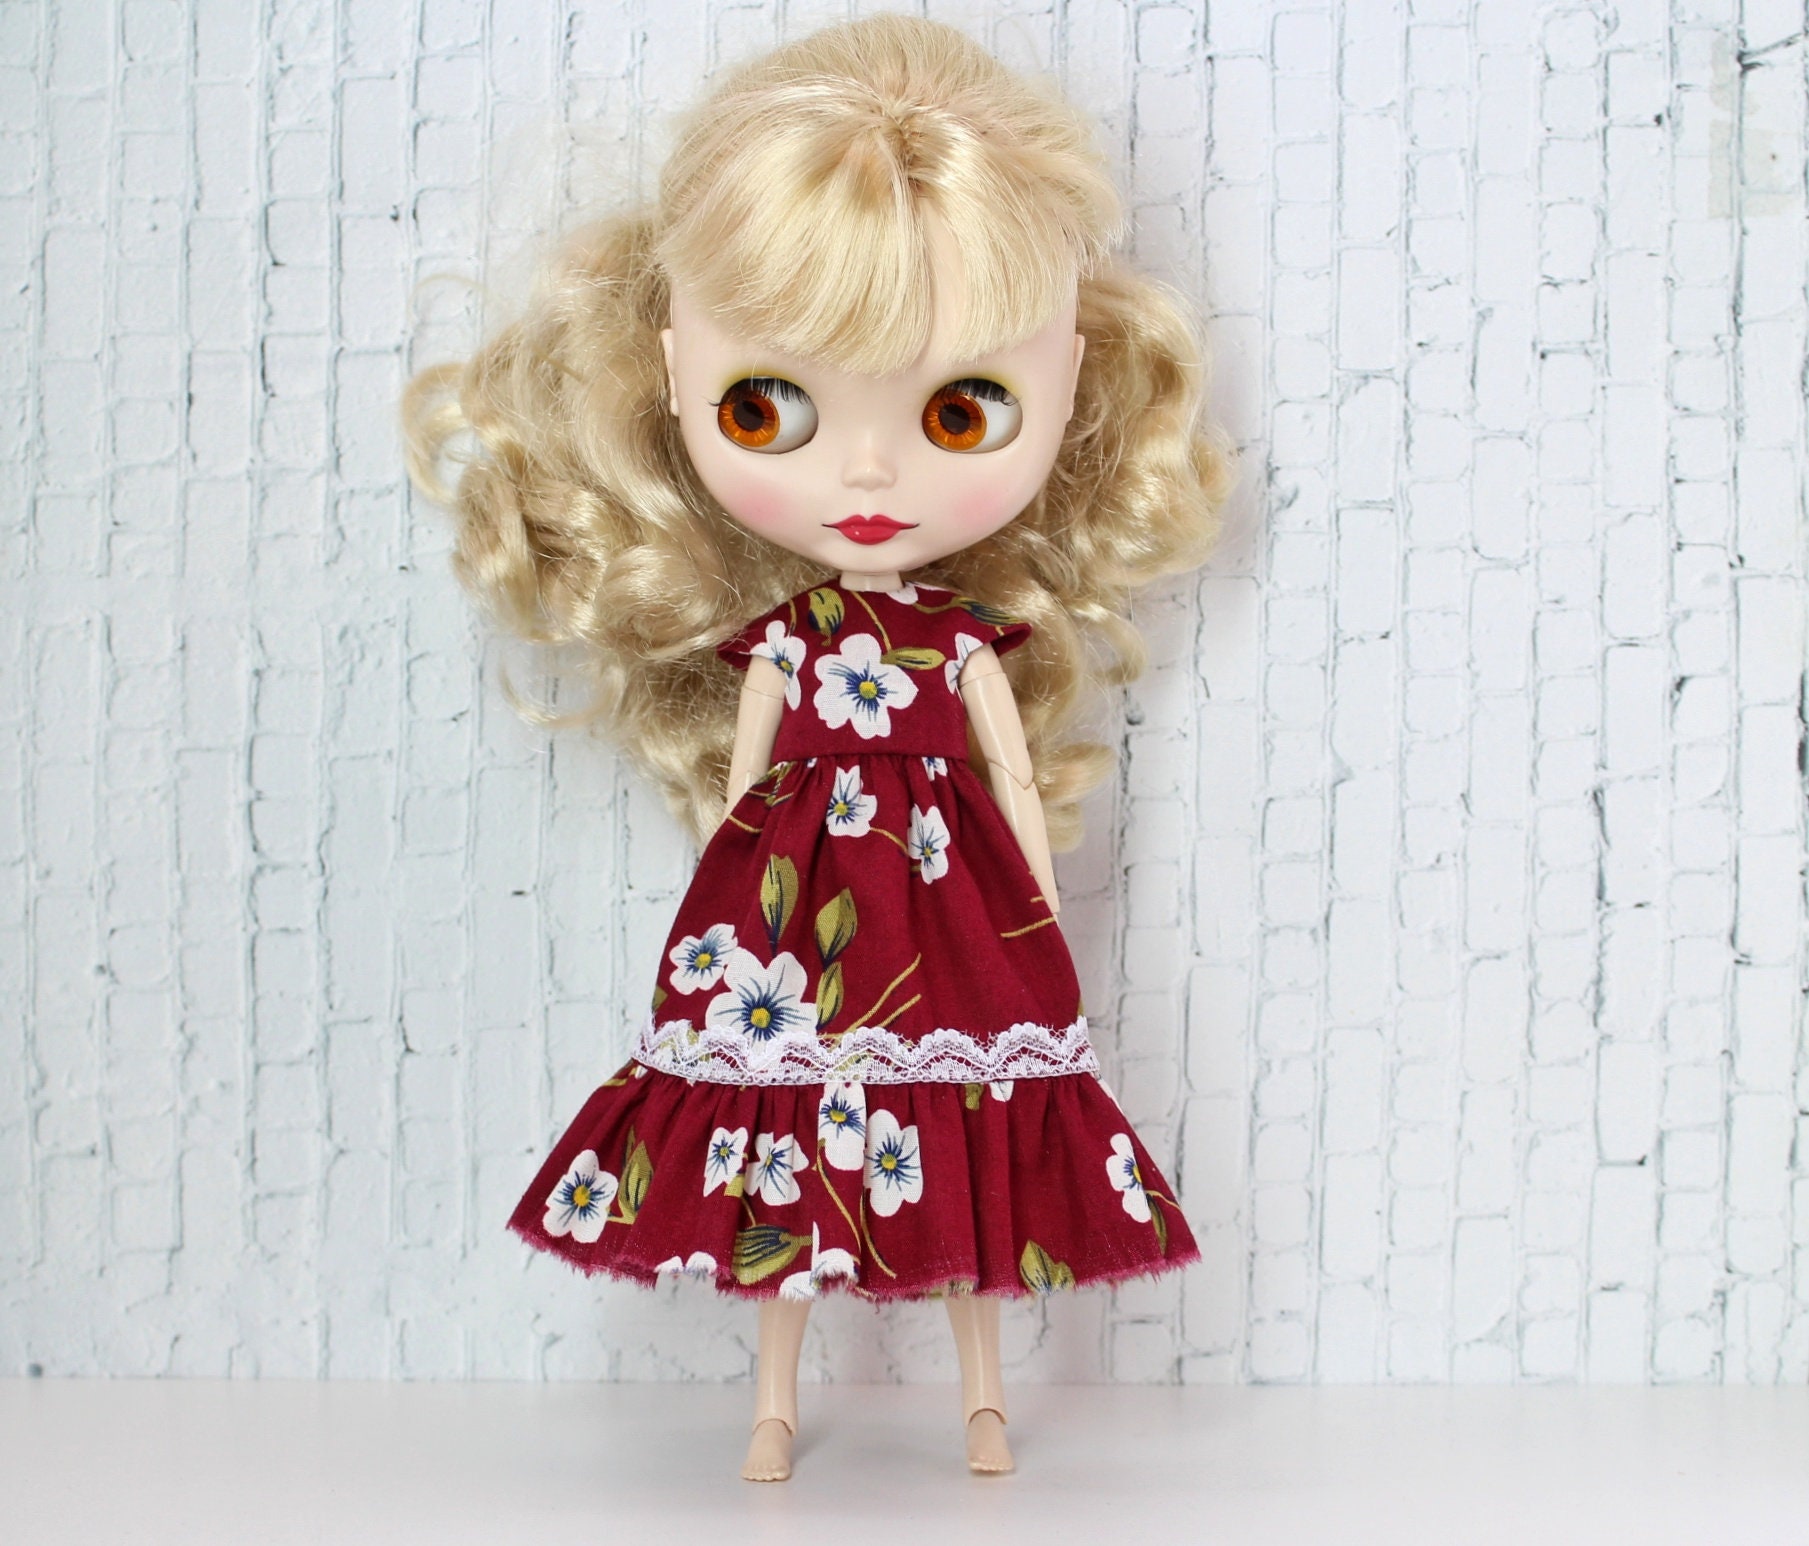 Blythe Dress Red Dress For Blythe Doll Blythe Outfit Doll Etsy